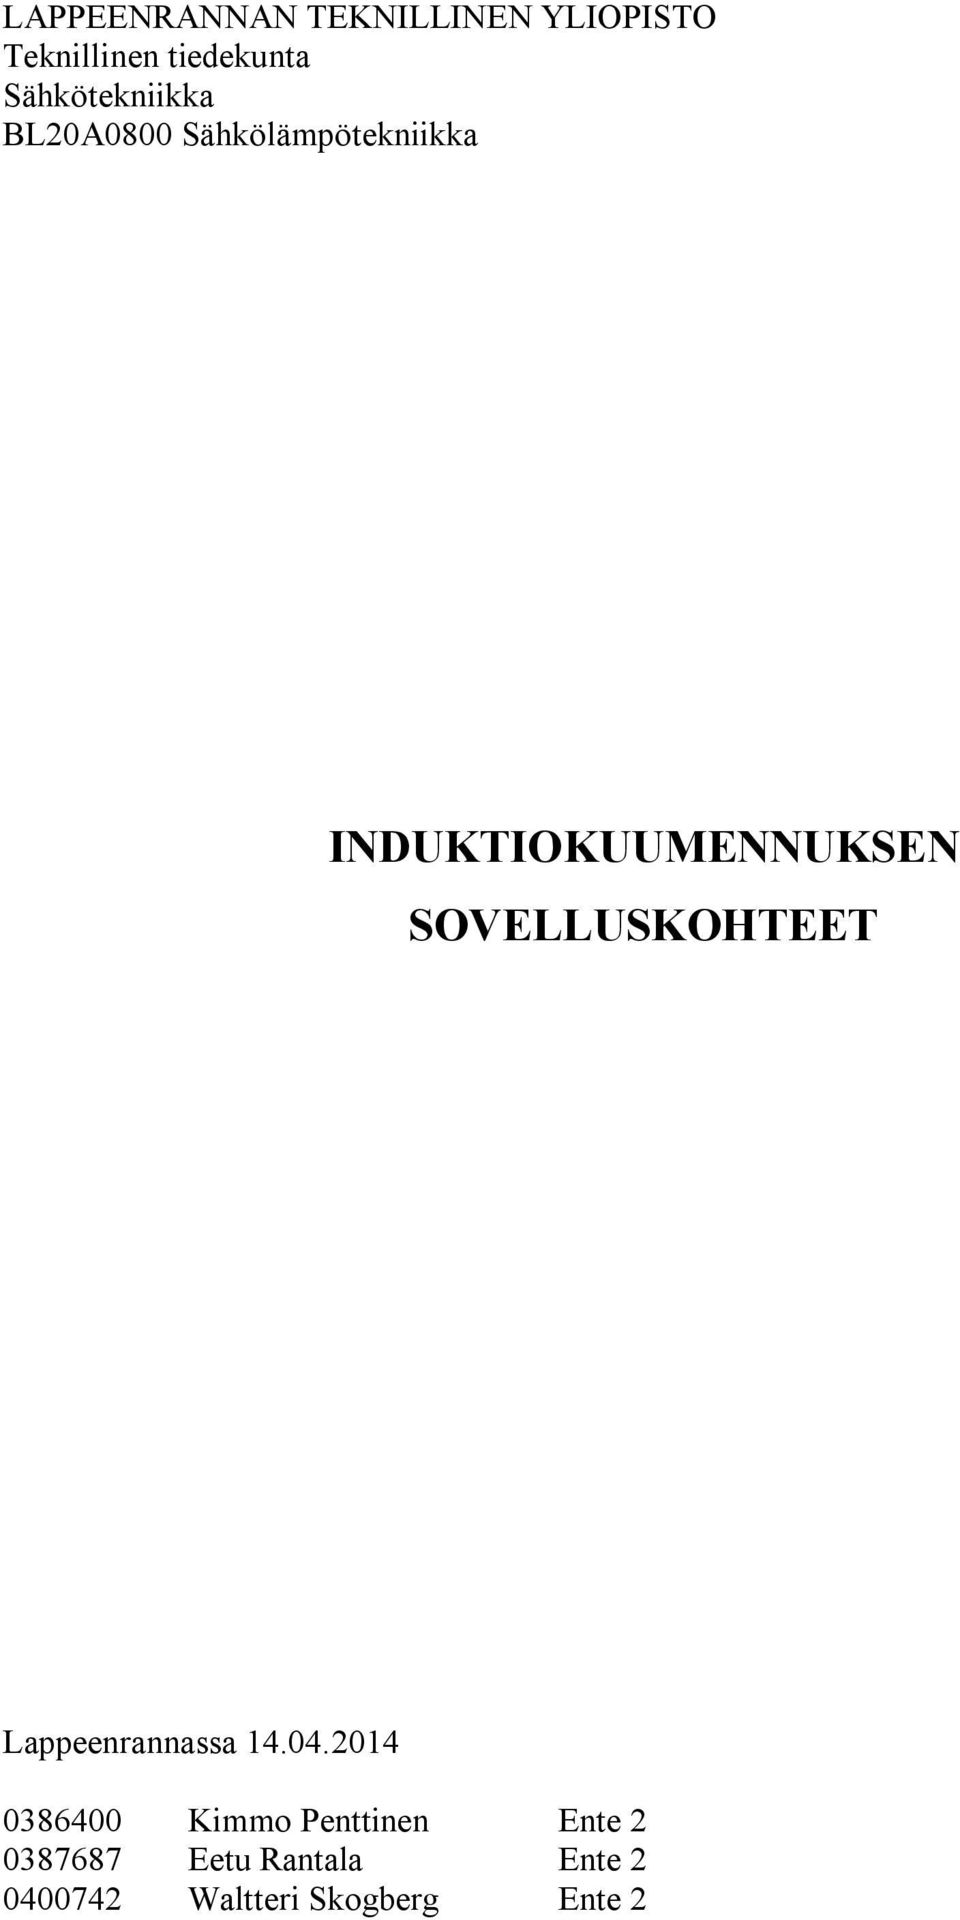 INDUKTIOKUUMENNUKSEN SOVELLUSKOHTEET Lappeenrannassa 14.04.